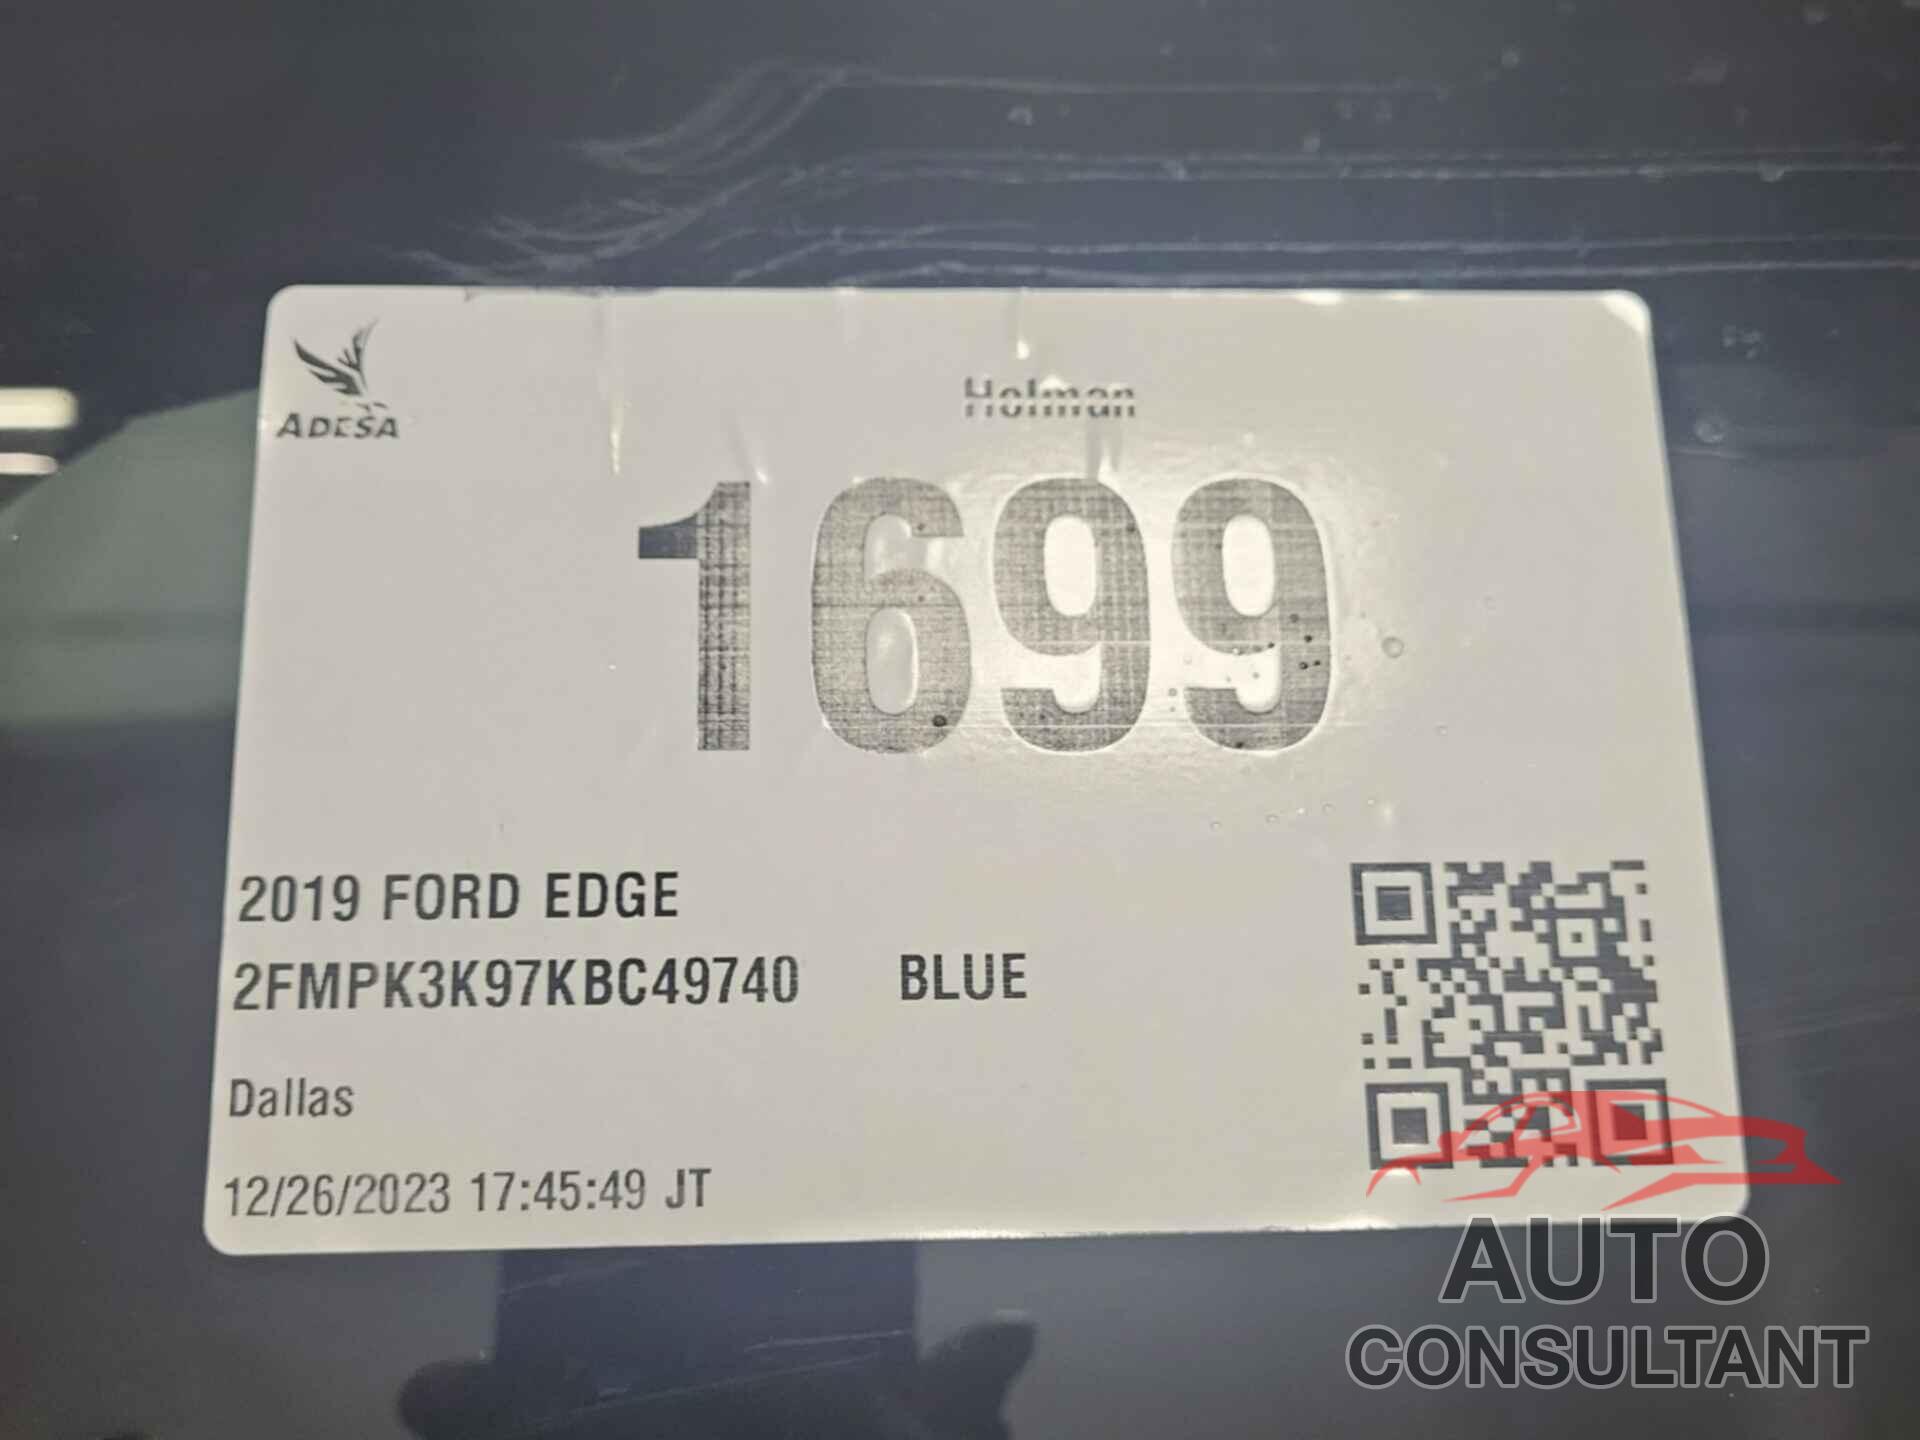 FORD EDGE 2019 - 2FMPK3K97KBC49740